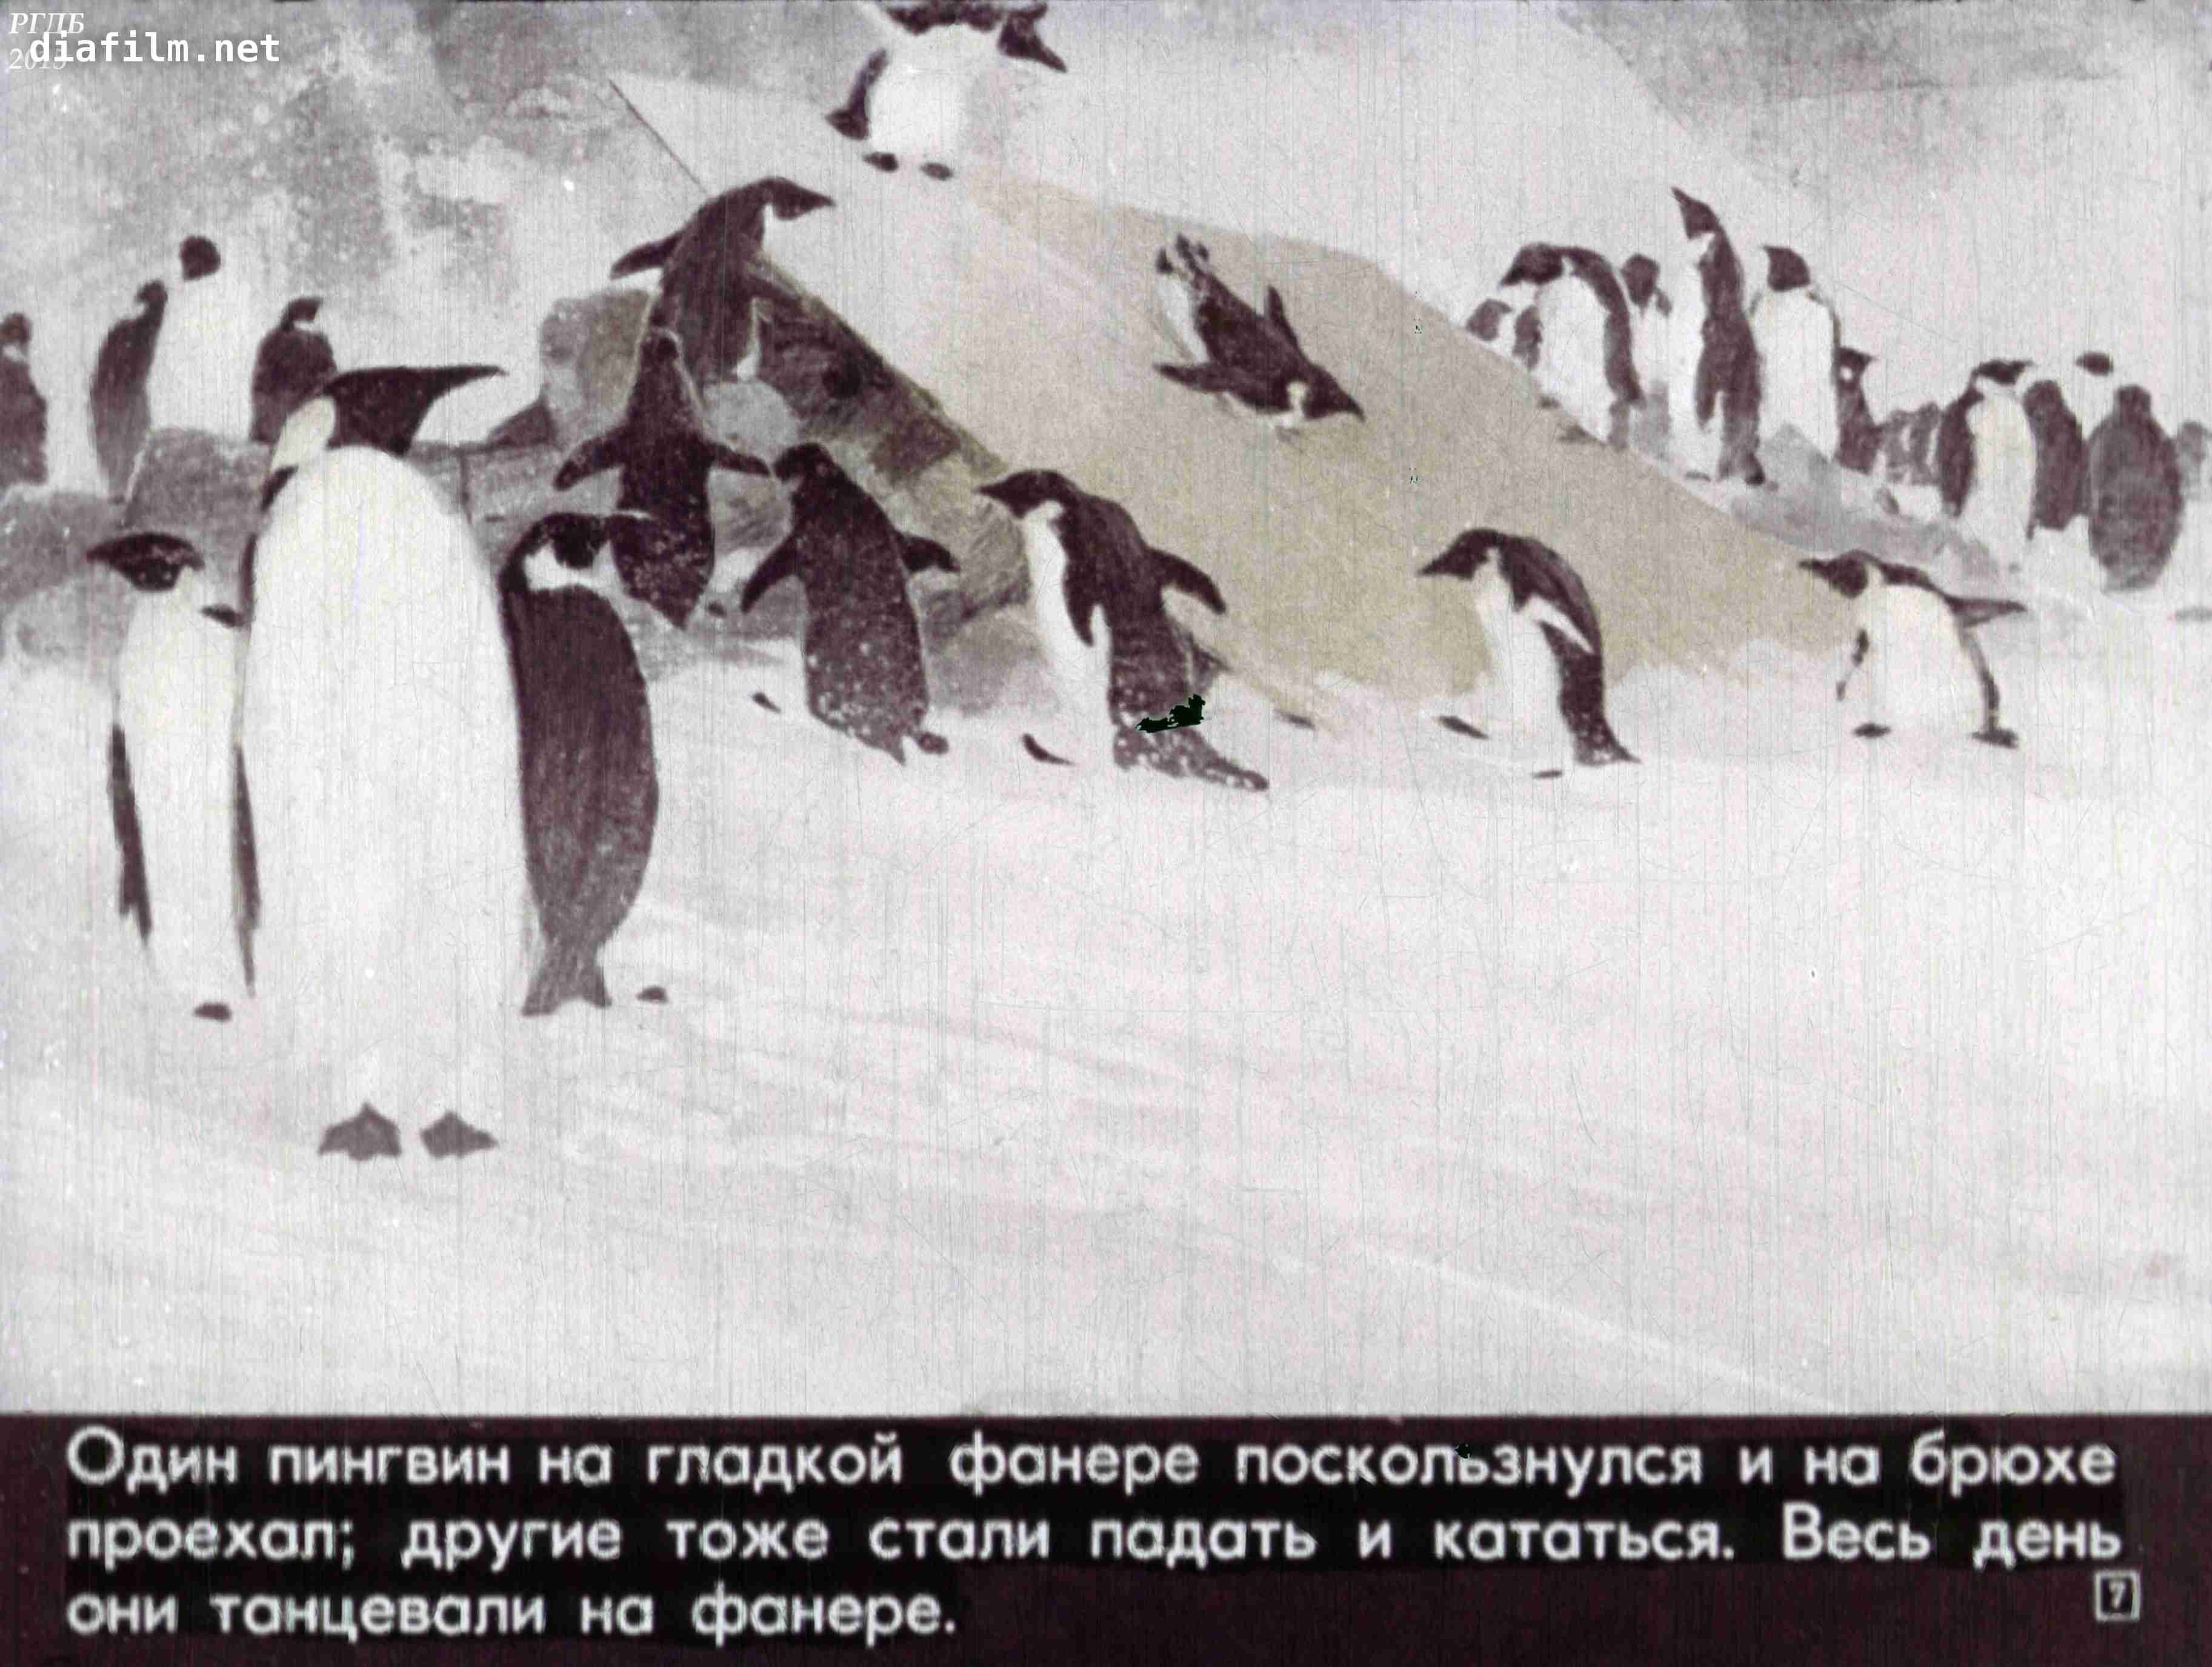 Пересказ рассказа про пингвинов старшая группа. Рассказ про пингвинов Снегирев. Г Снегирев Пингвиний пляж. Г Снегирева про пингвинов рассказ. Иллюстрации рассказа про пингвинов Снегирёв.